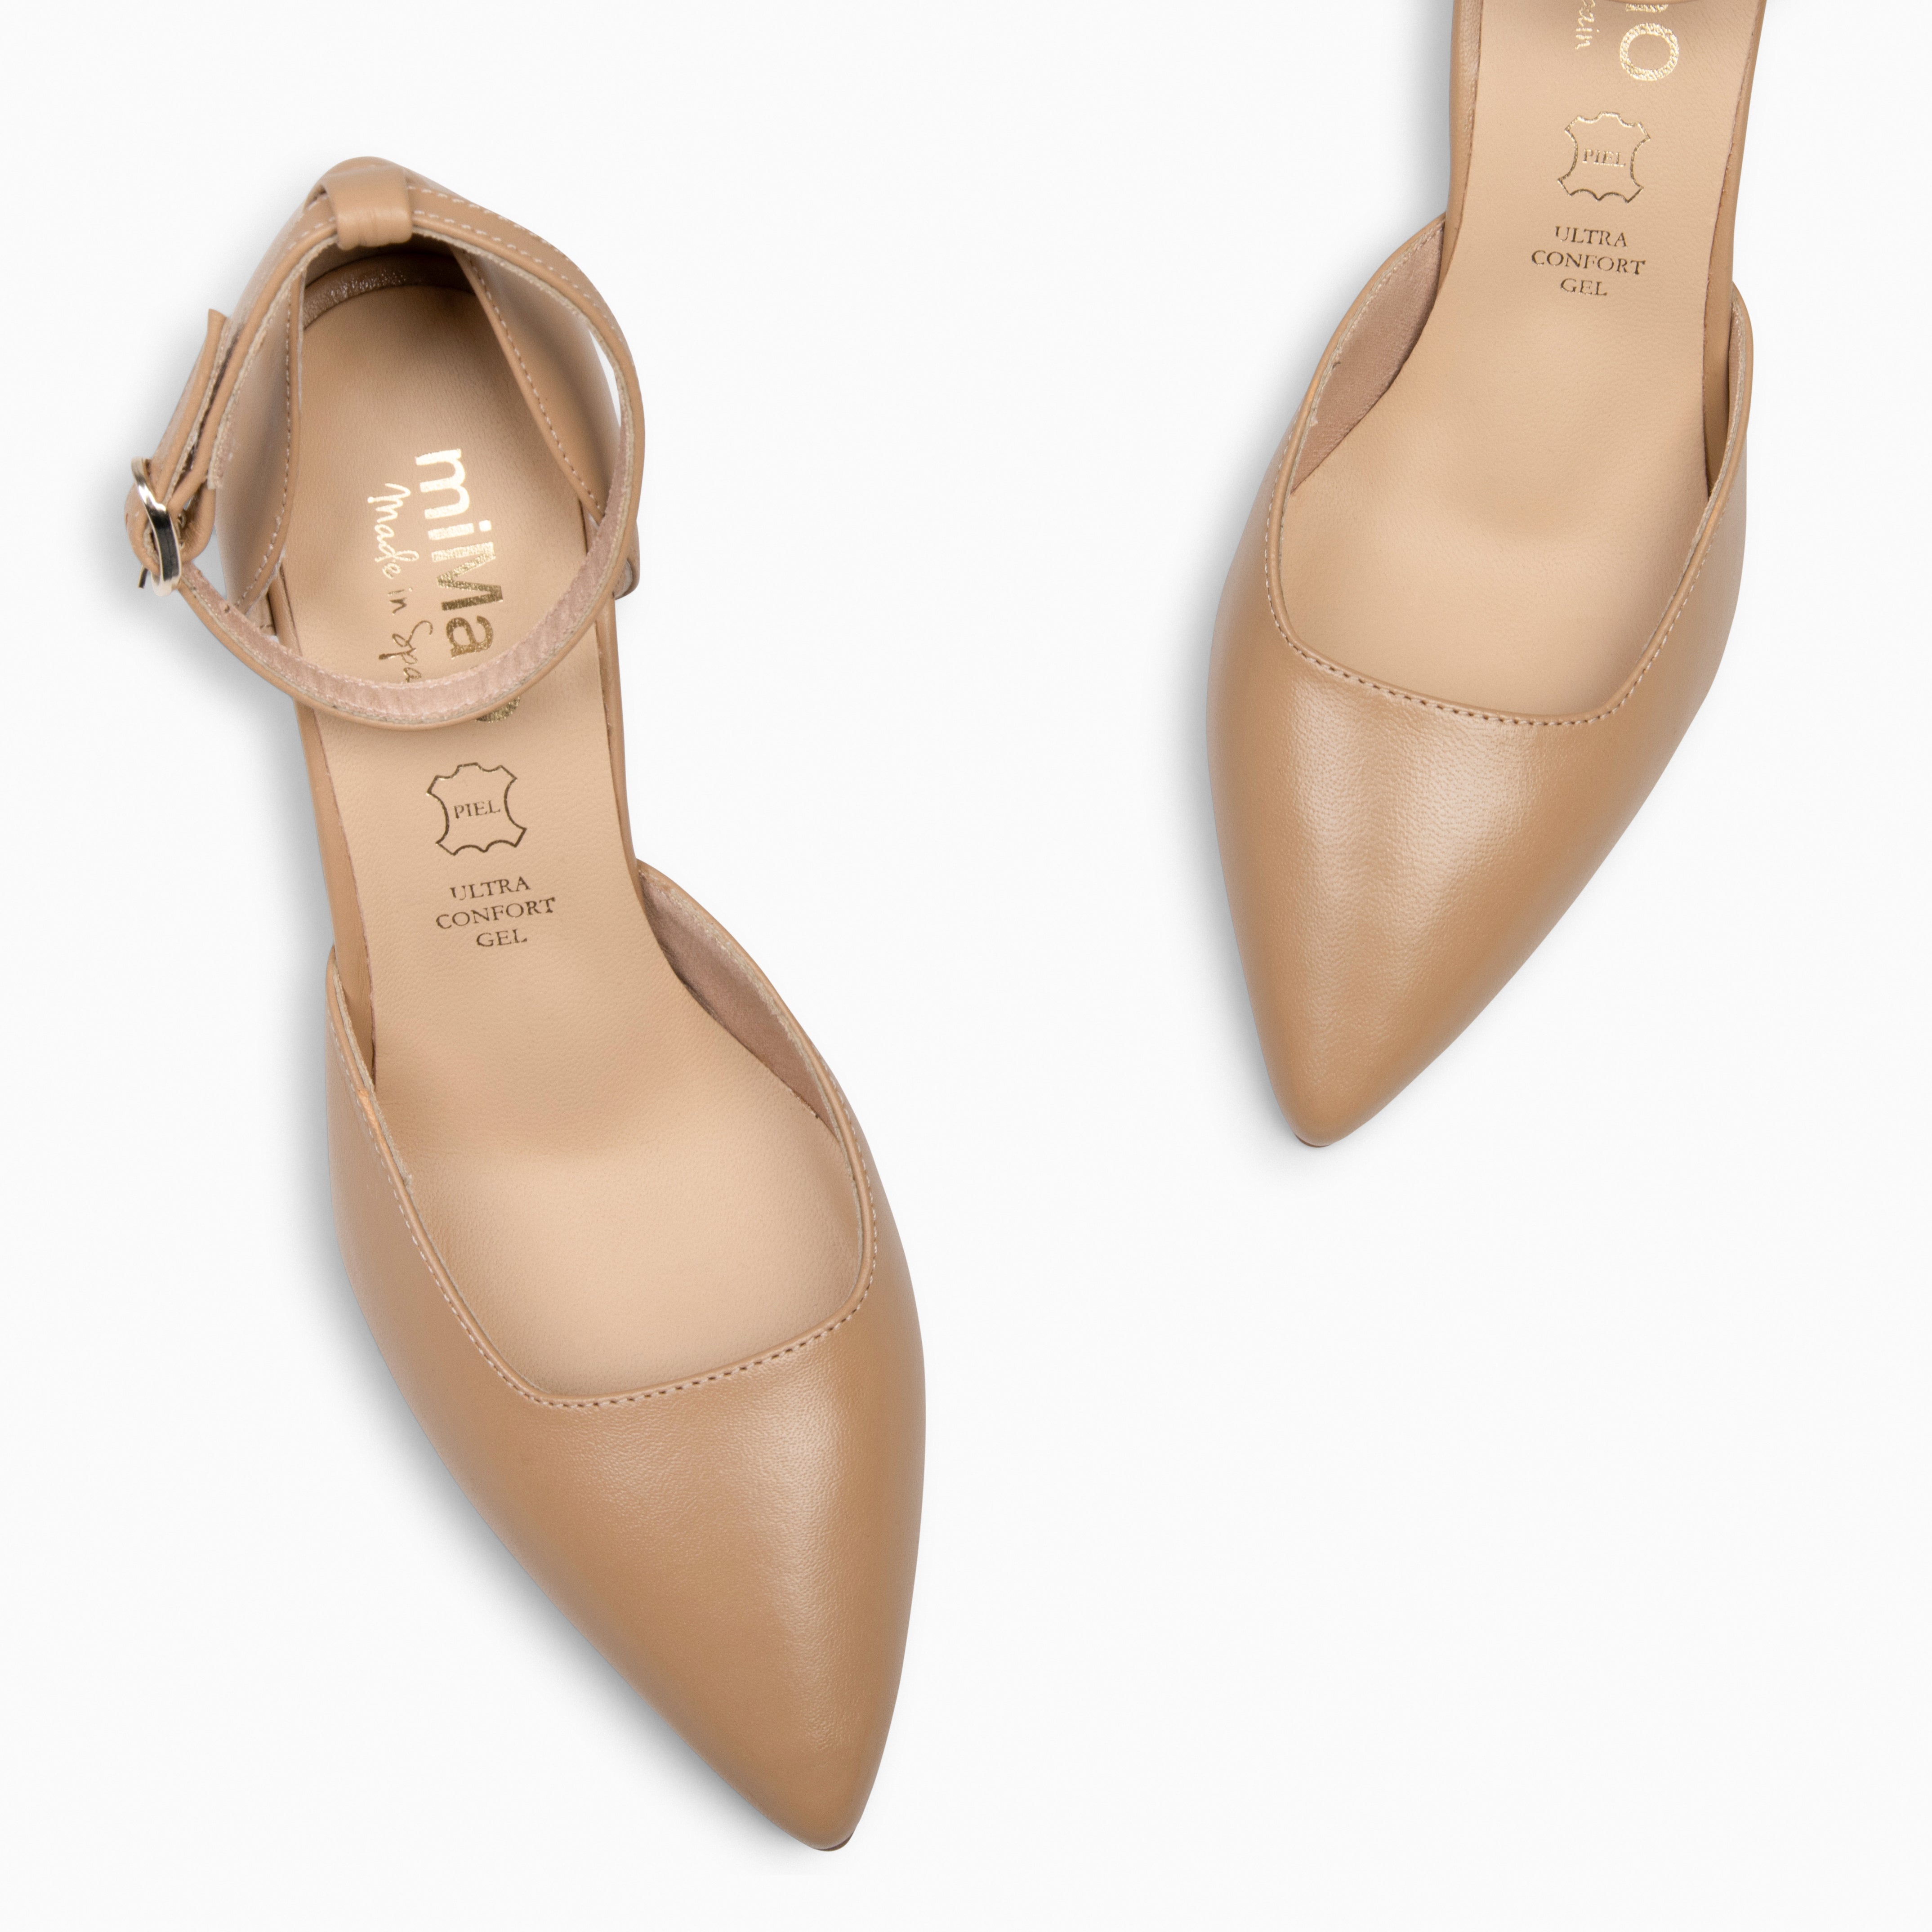 AINHOA – CAMEL elegant heels